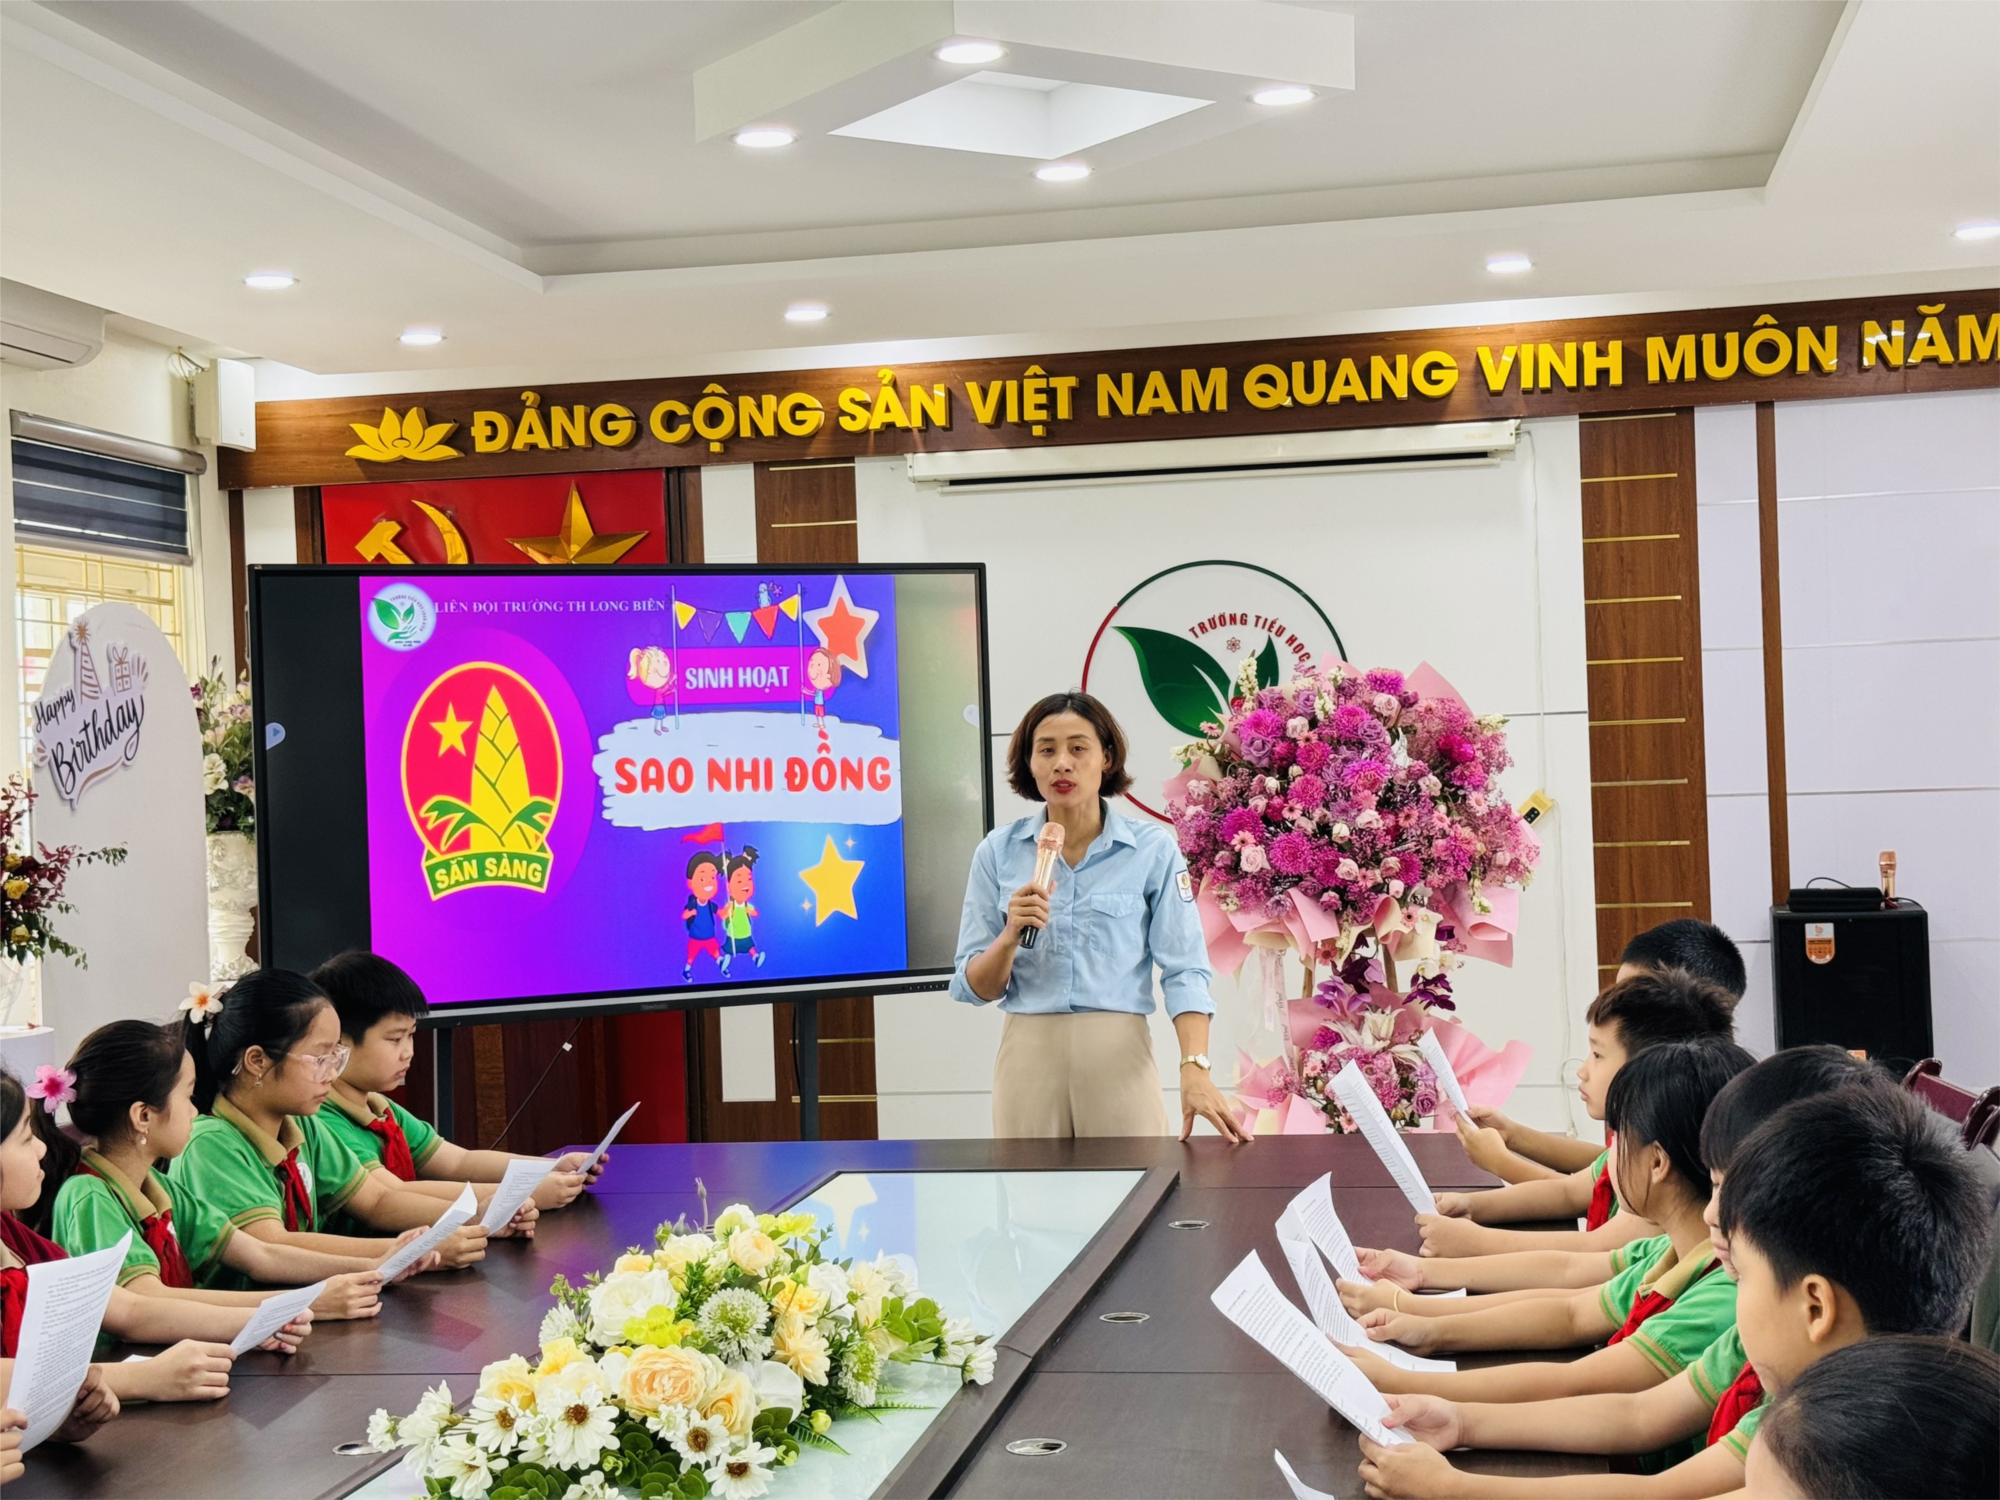 Liên đội trường Tiểu học Long Biên tổ chức tập huấn sinh hoạt truyền thống chủ đề  Mừng sinh nhật Bác - Tự hào truyền thống Đội”